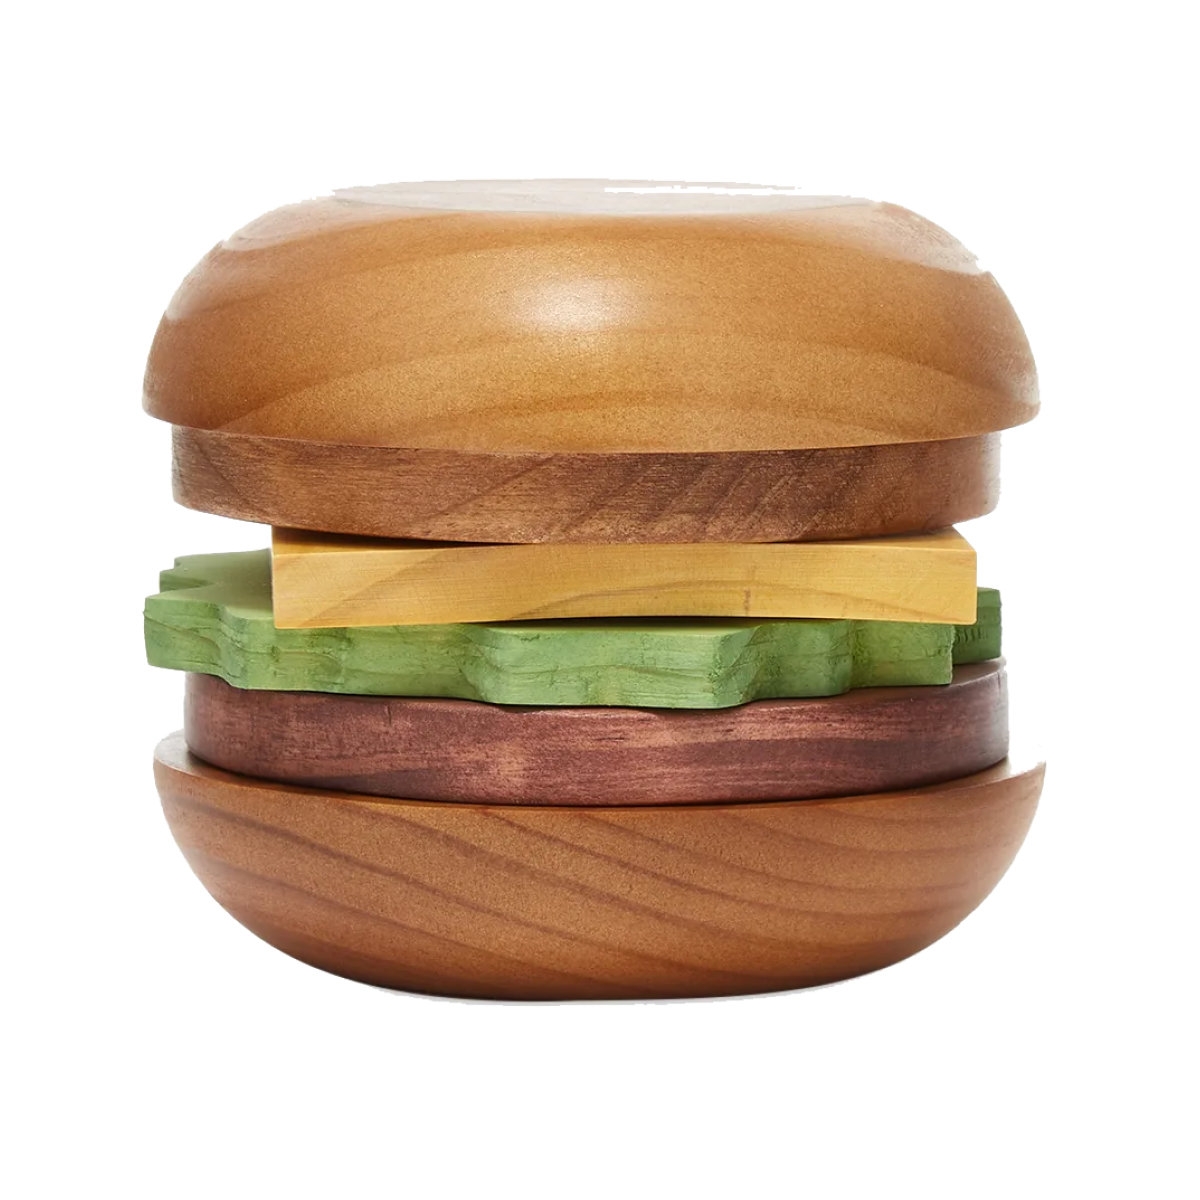 A set of wooden coasters that form a hamburger